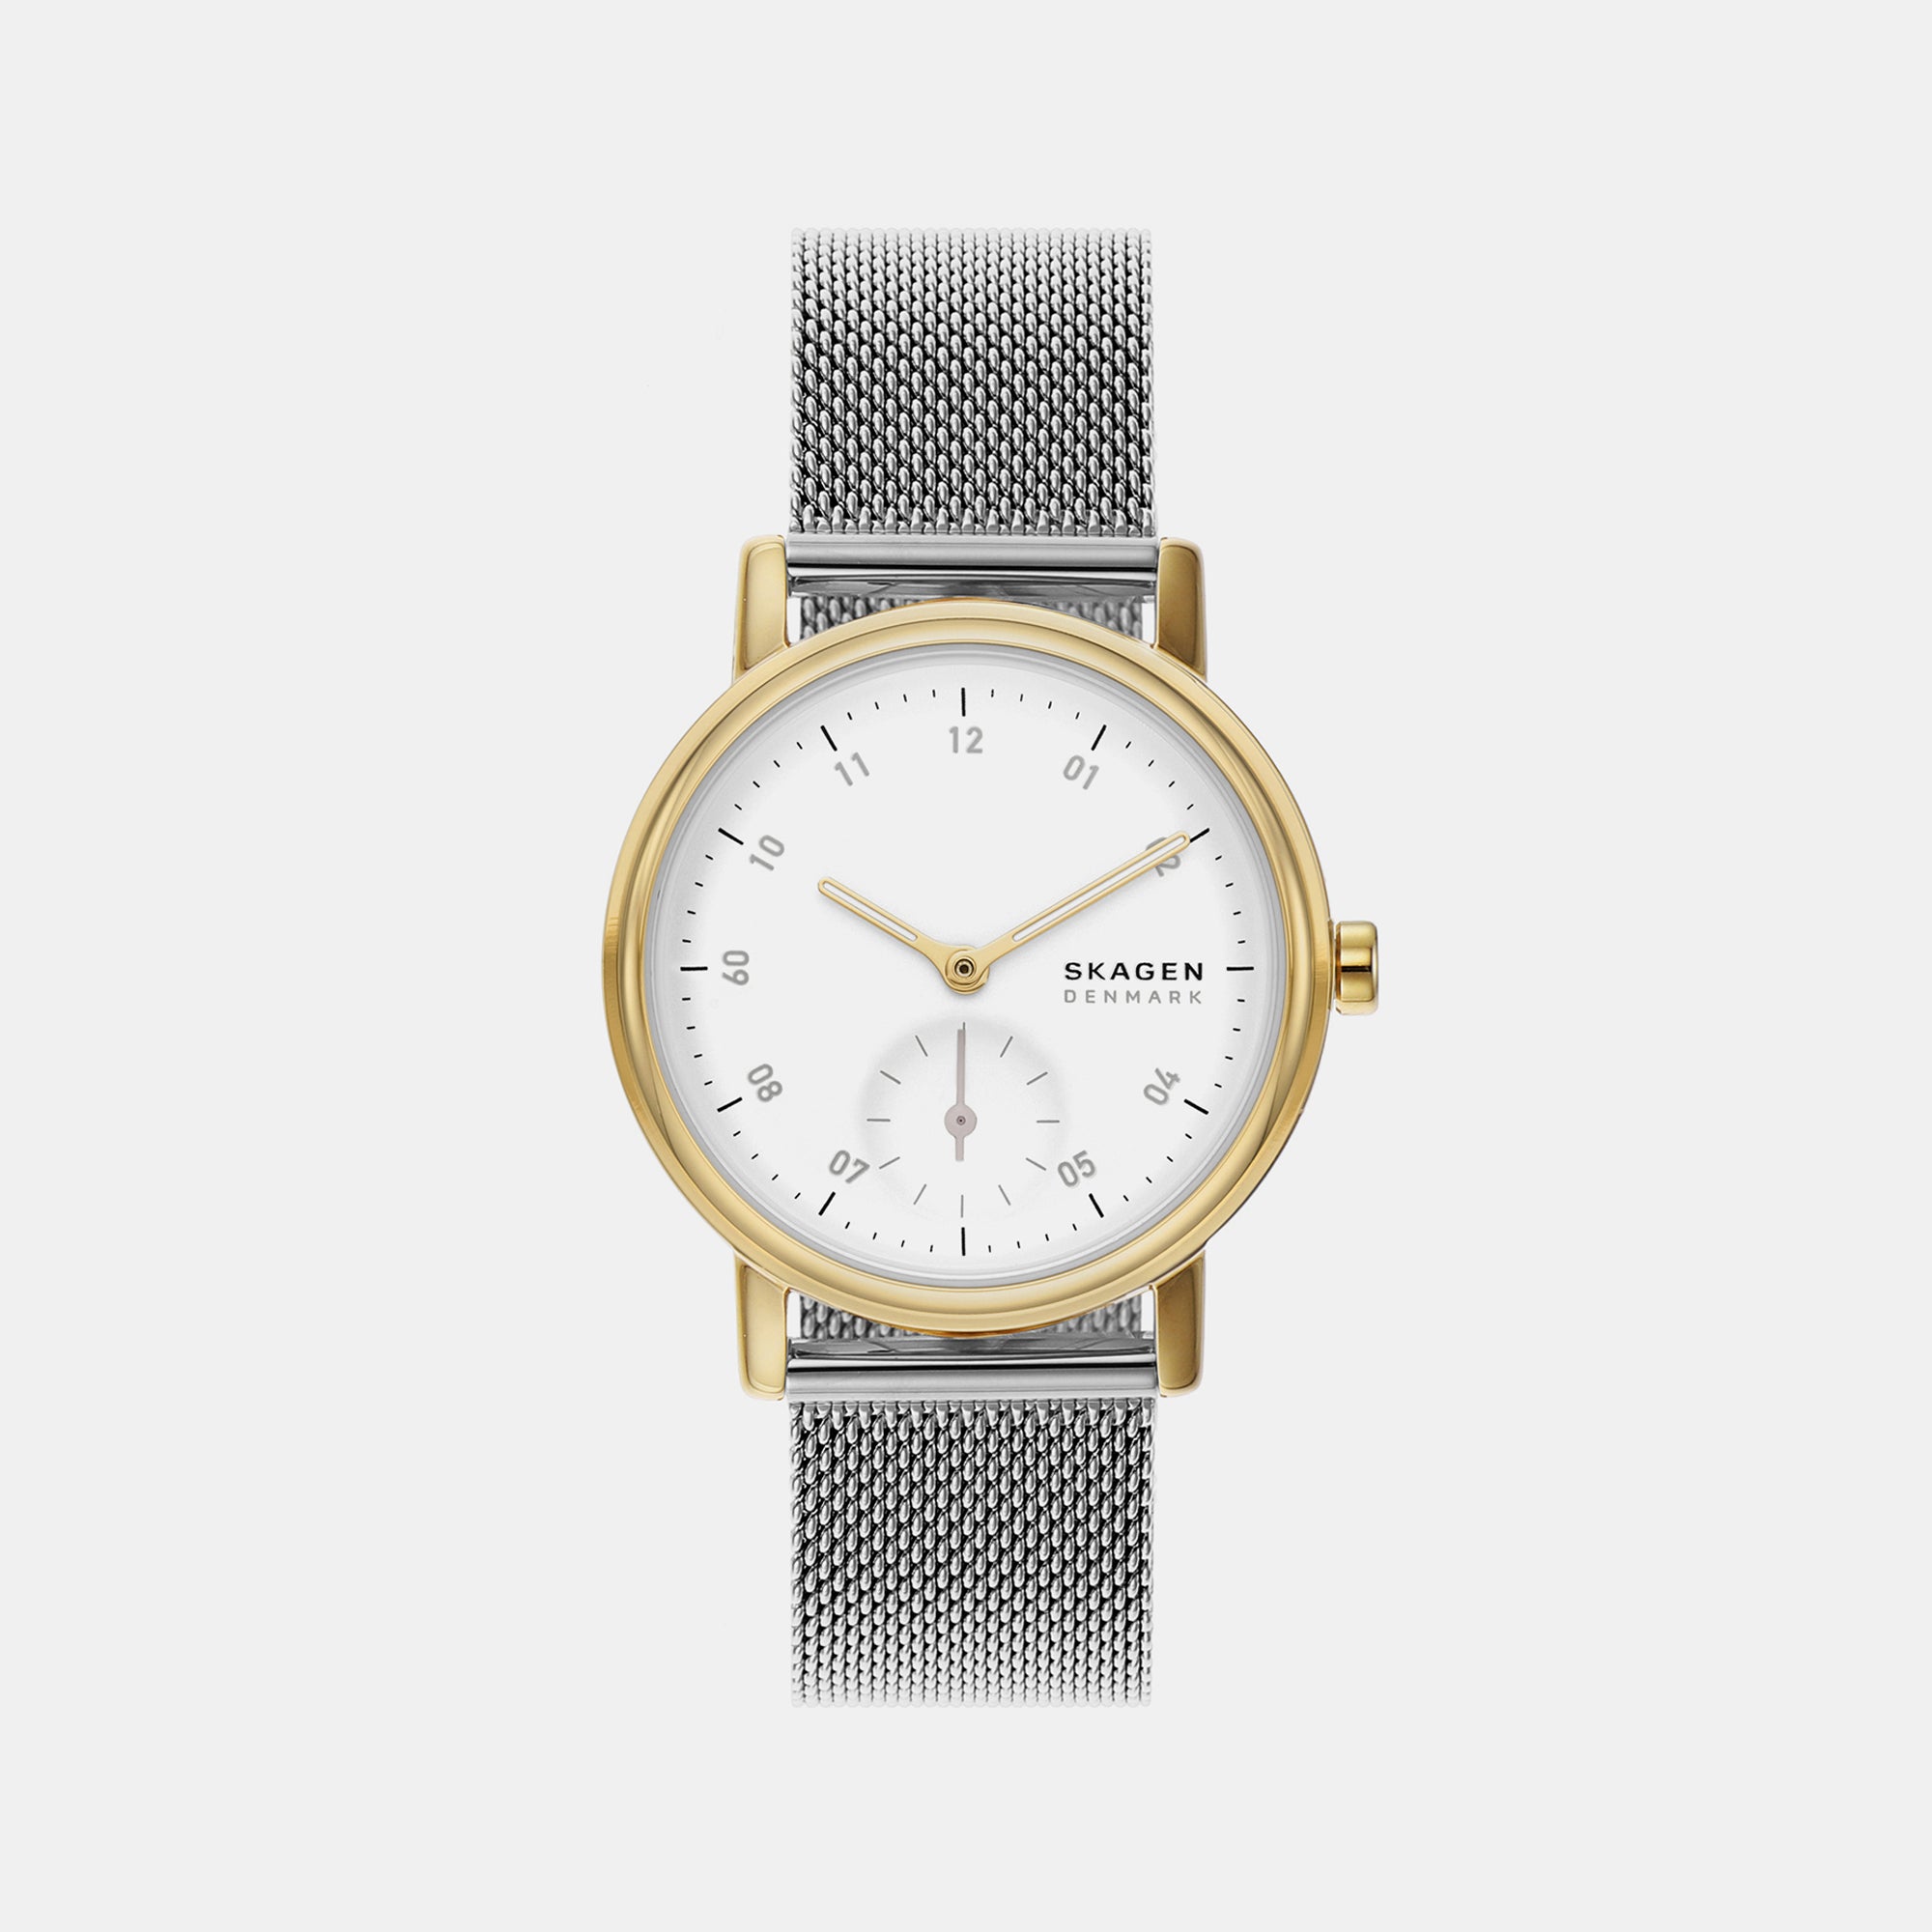 Skagen Watches | Caravan Gift Shop